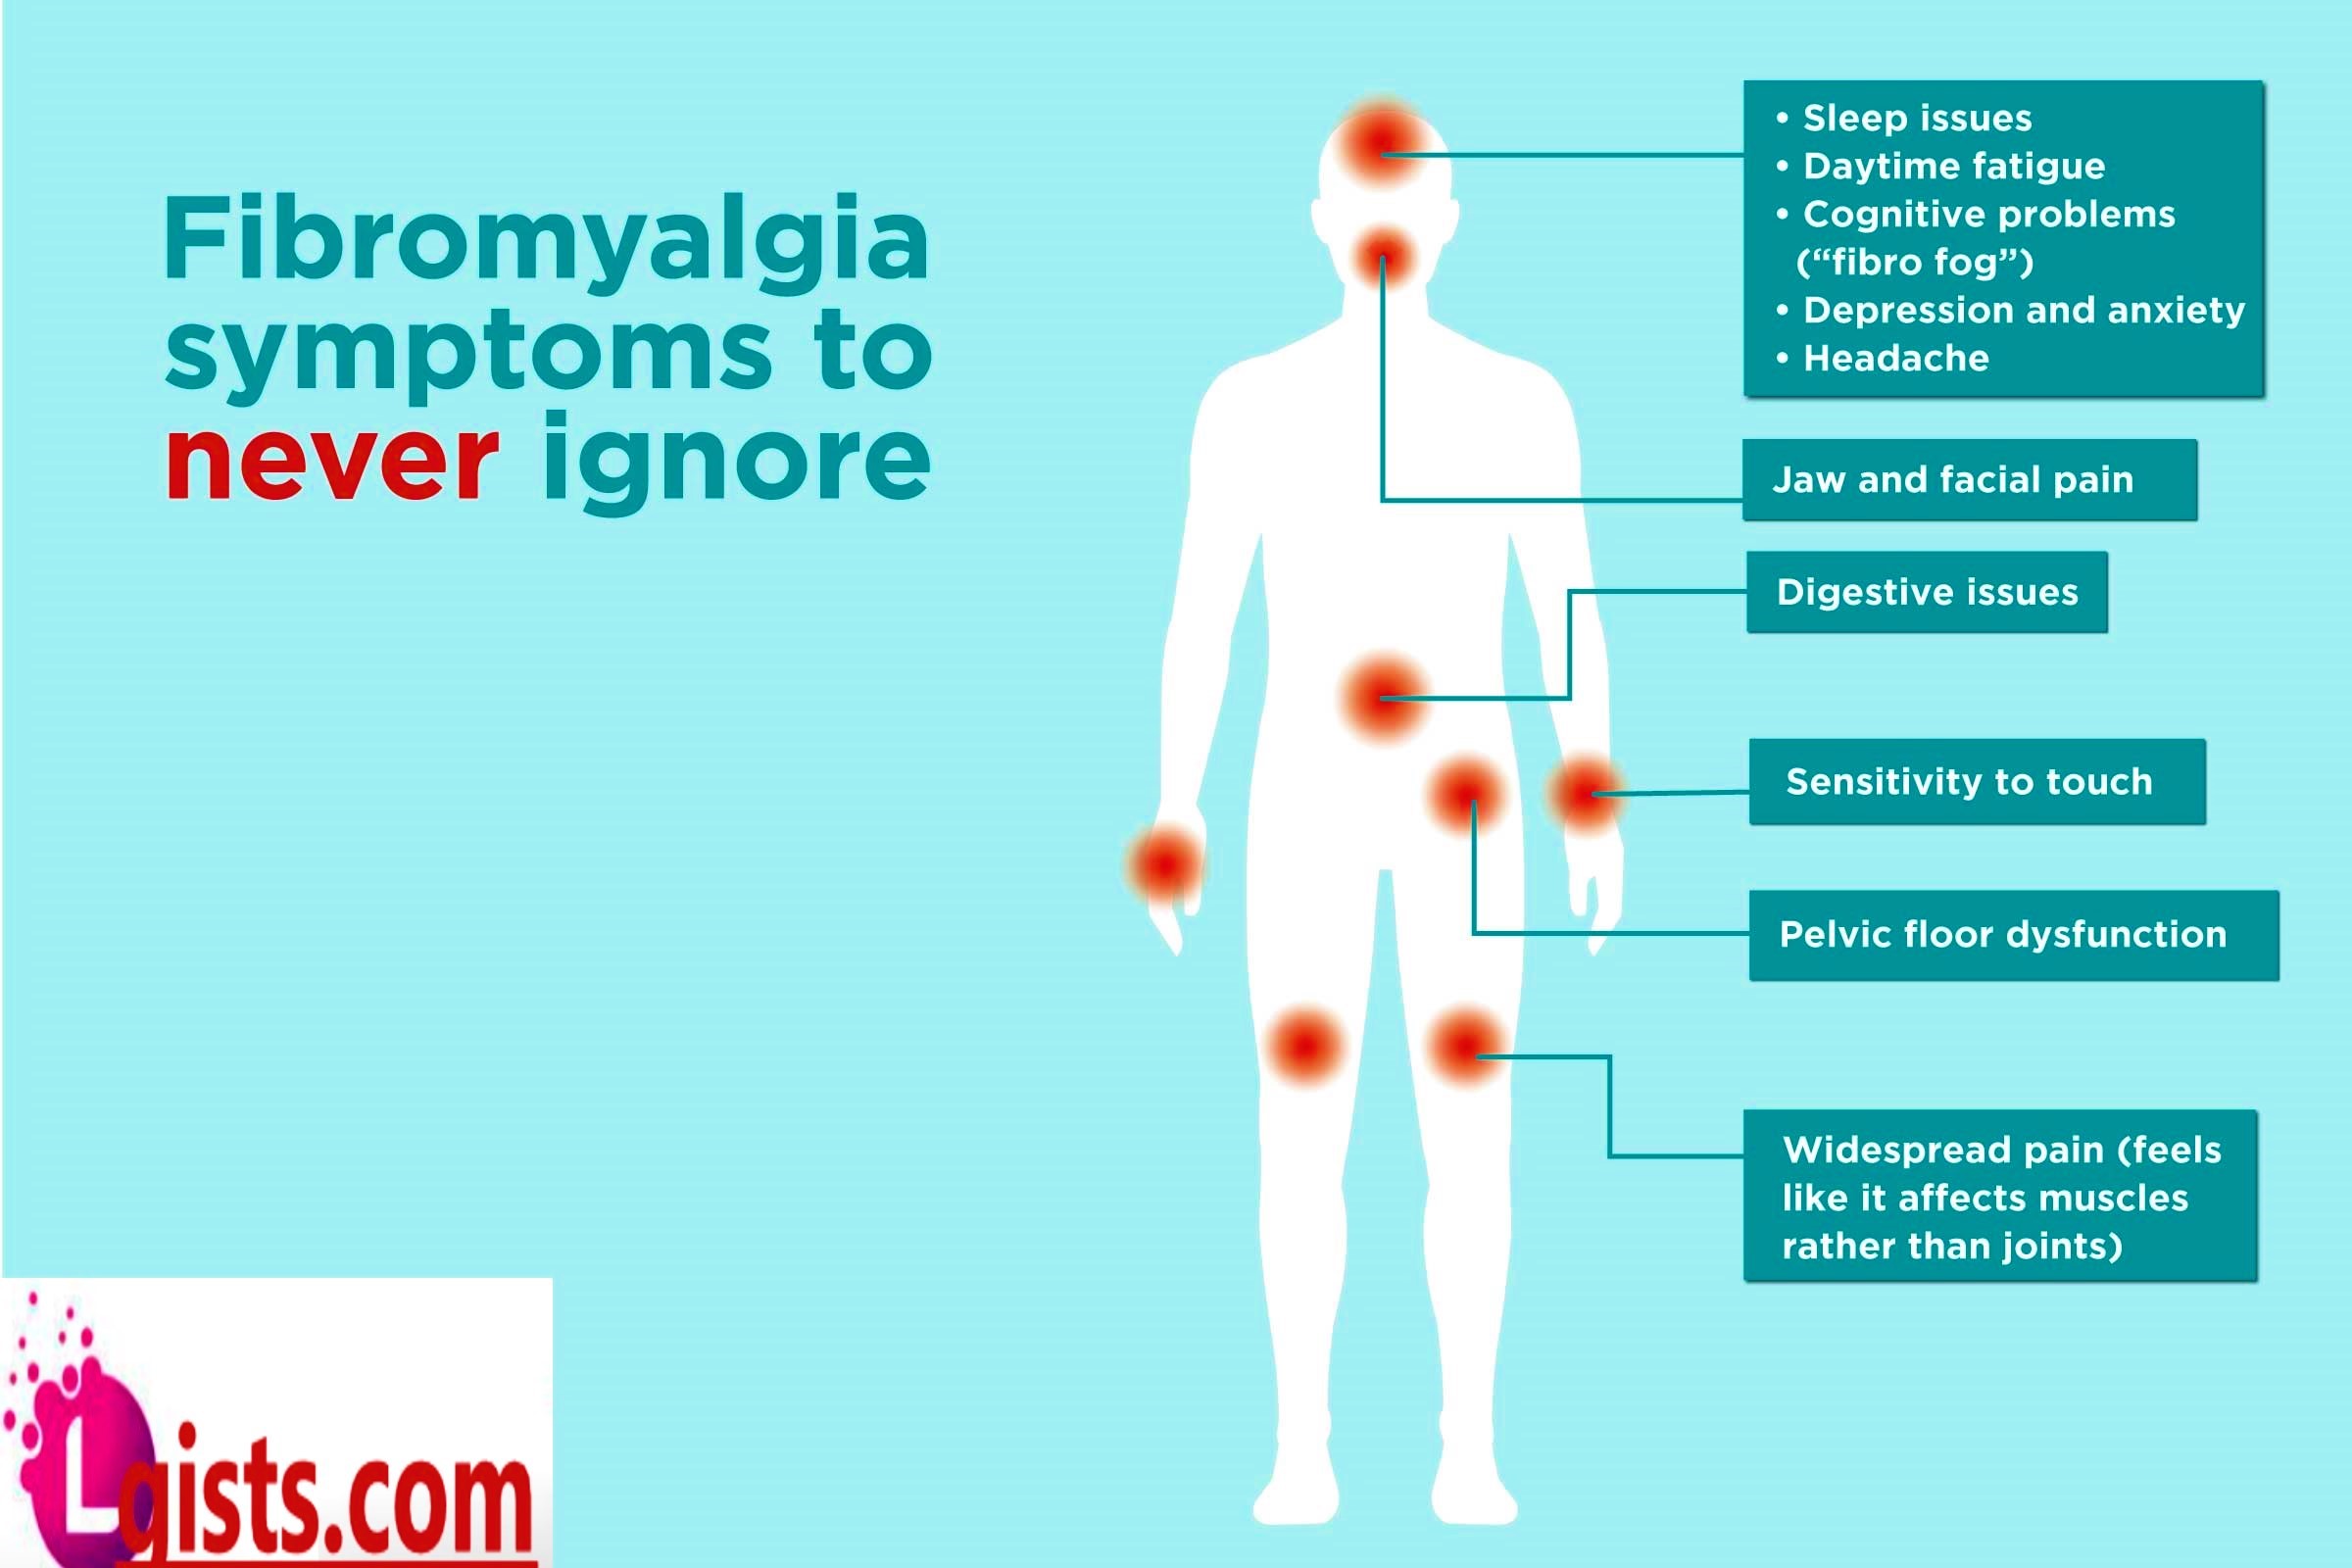 symptoms of fibromyalgia